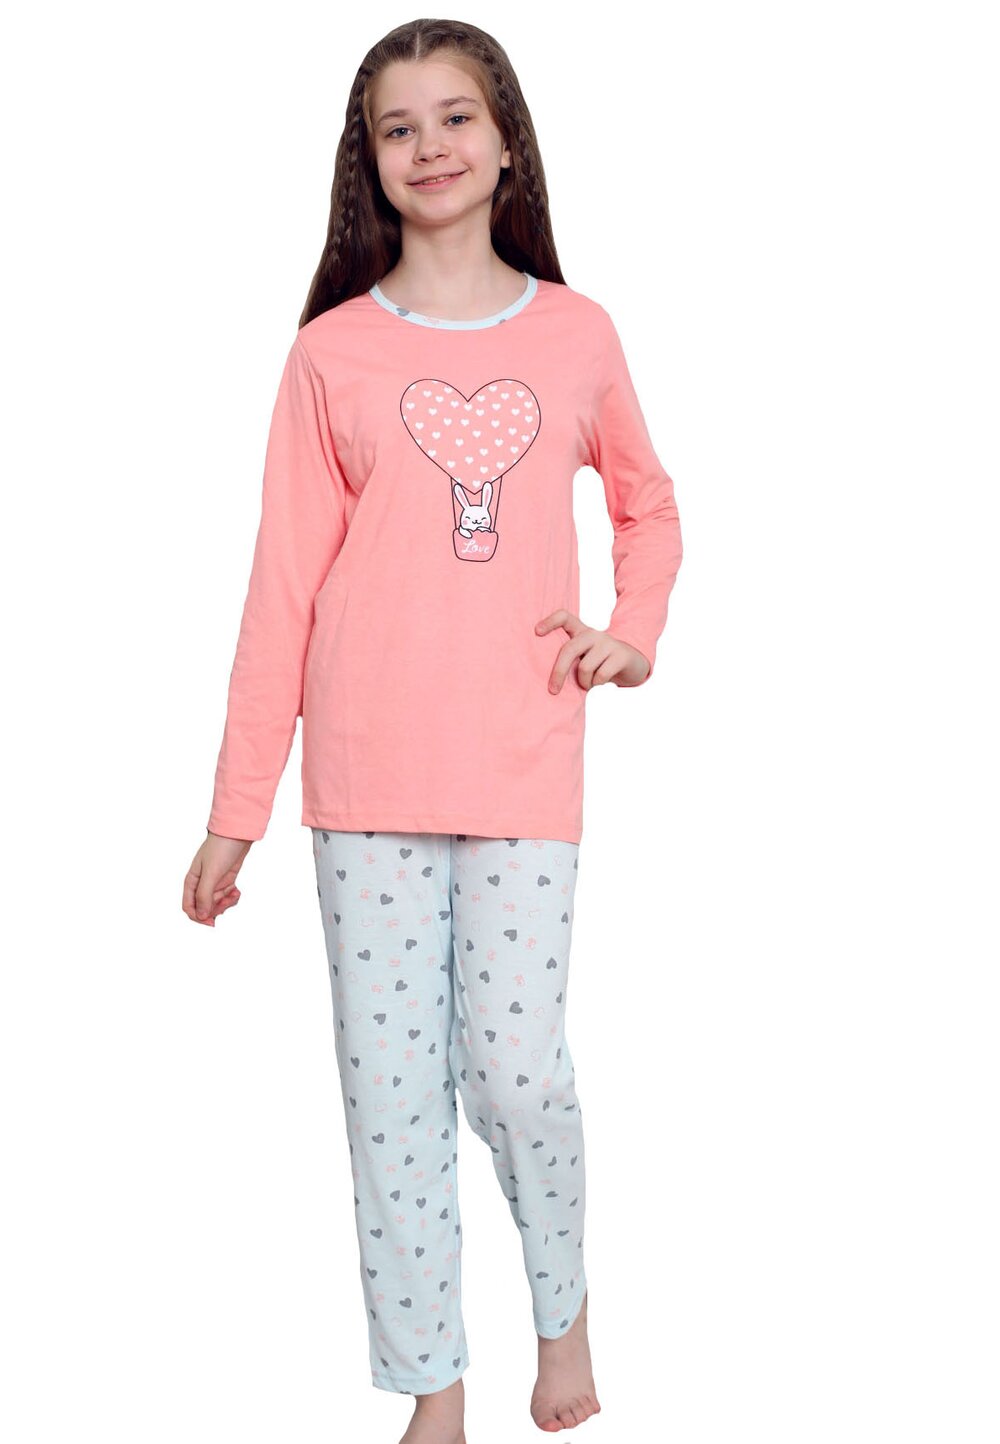 Pijama maneca lunga, bumbac, Love Rabbit, roz bumbac